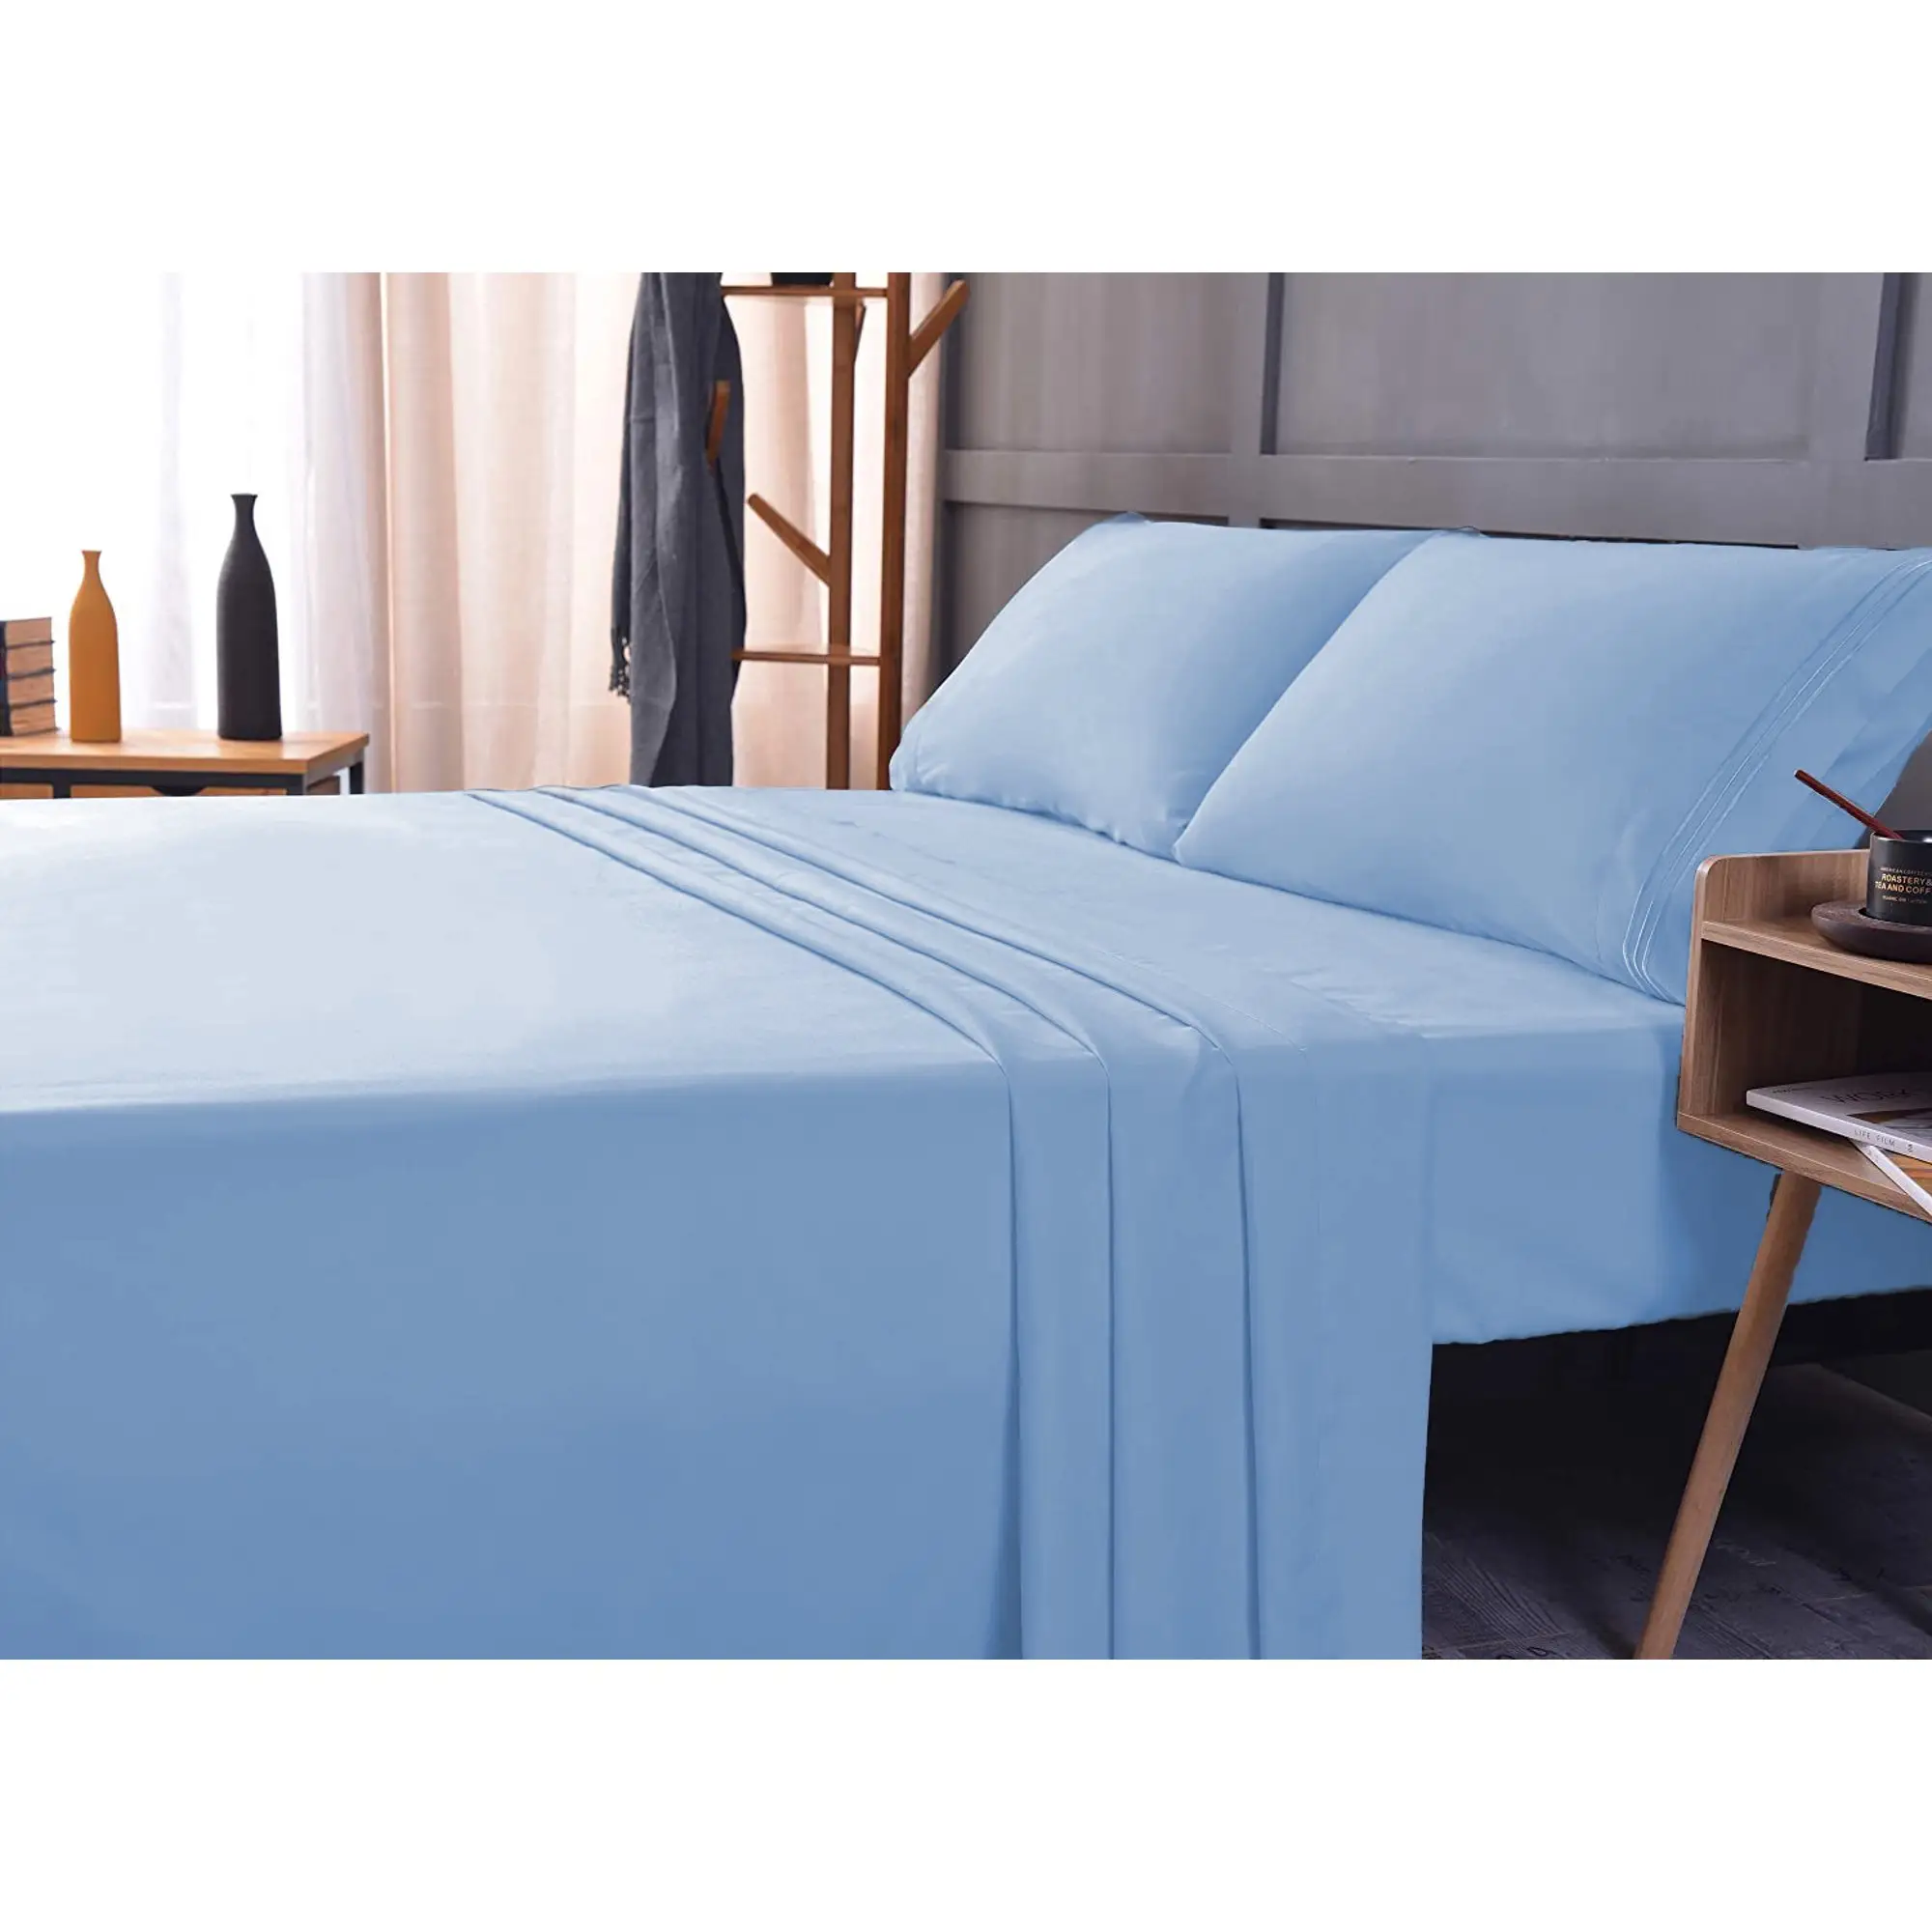 Drap de lit pocket, literie de haute qualité, 1800 fils, bleu clair, pour la maison, hôtel, 4 pièces